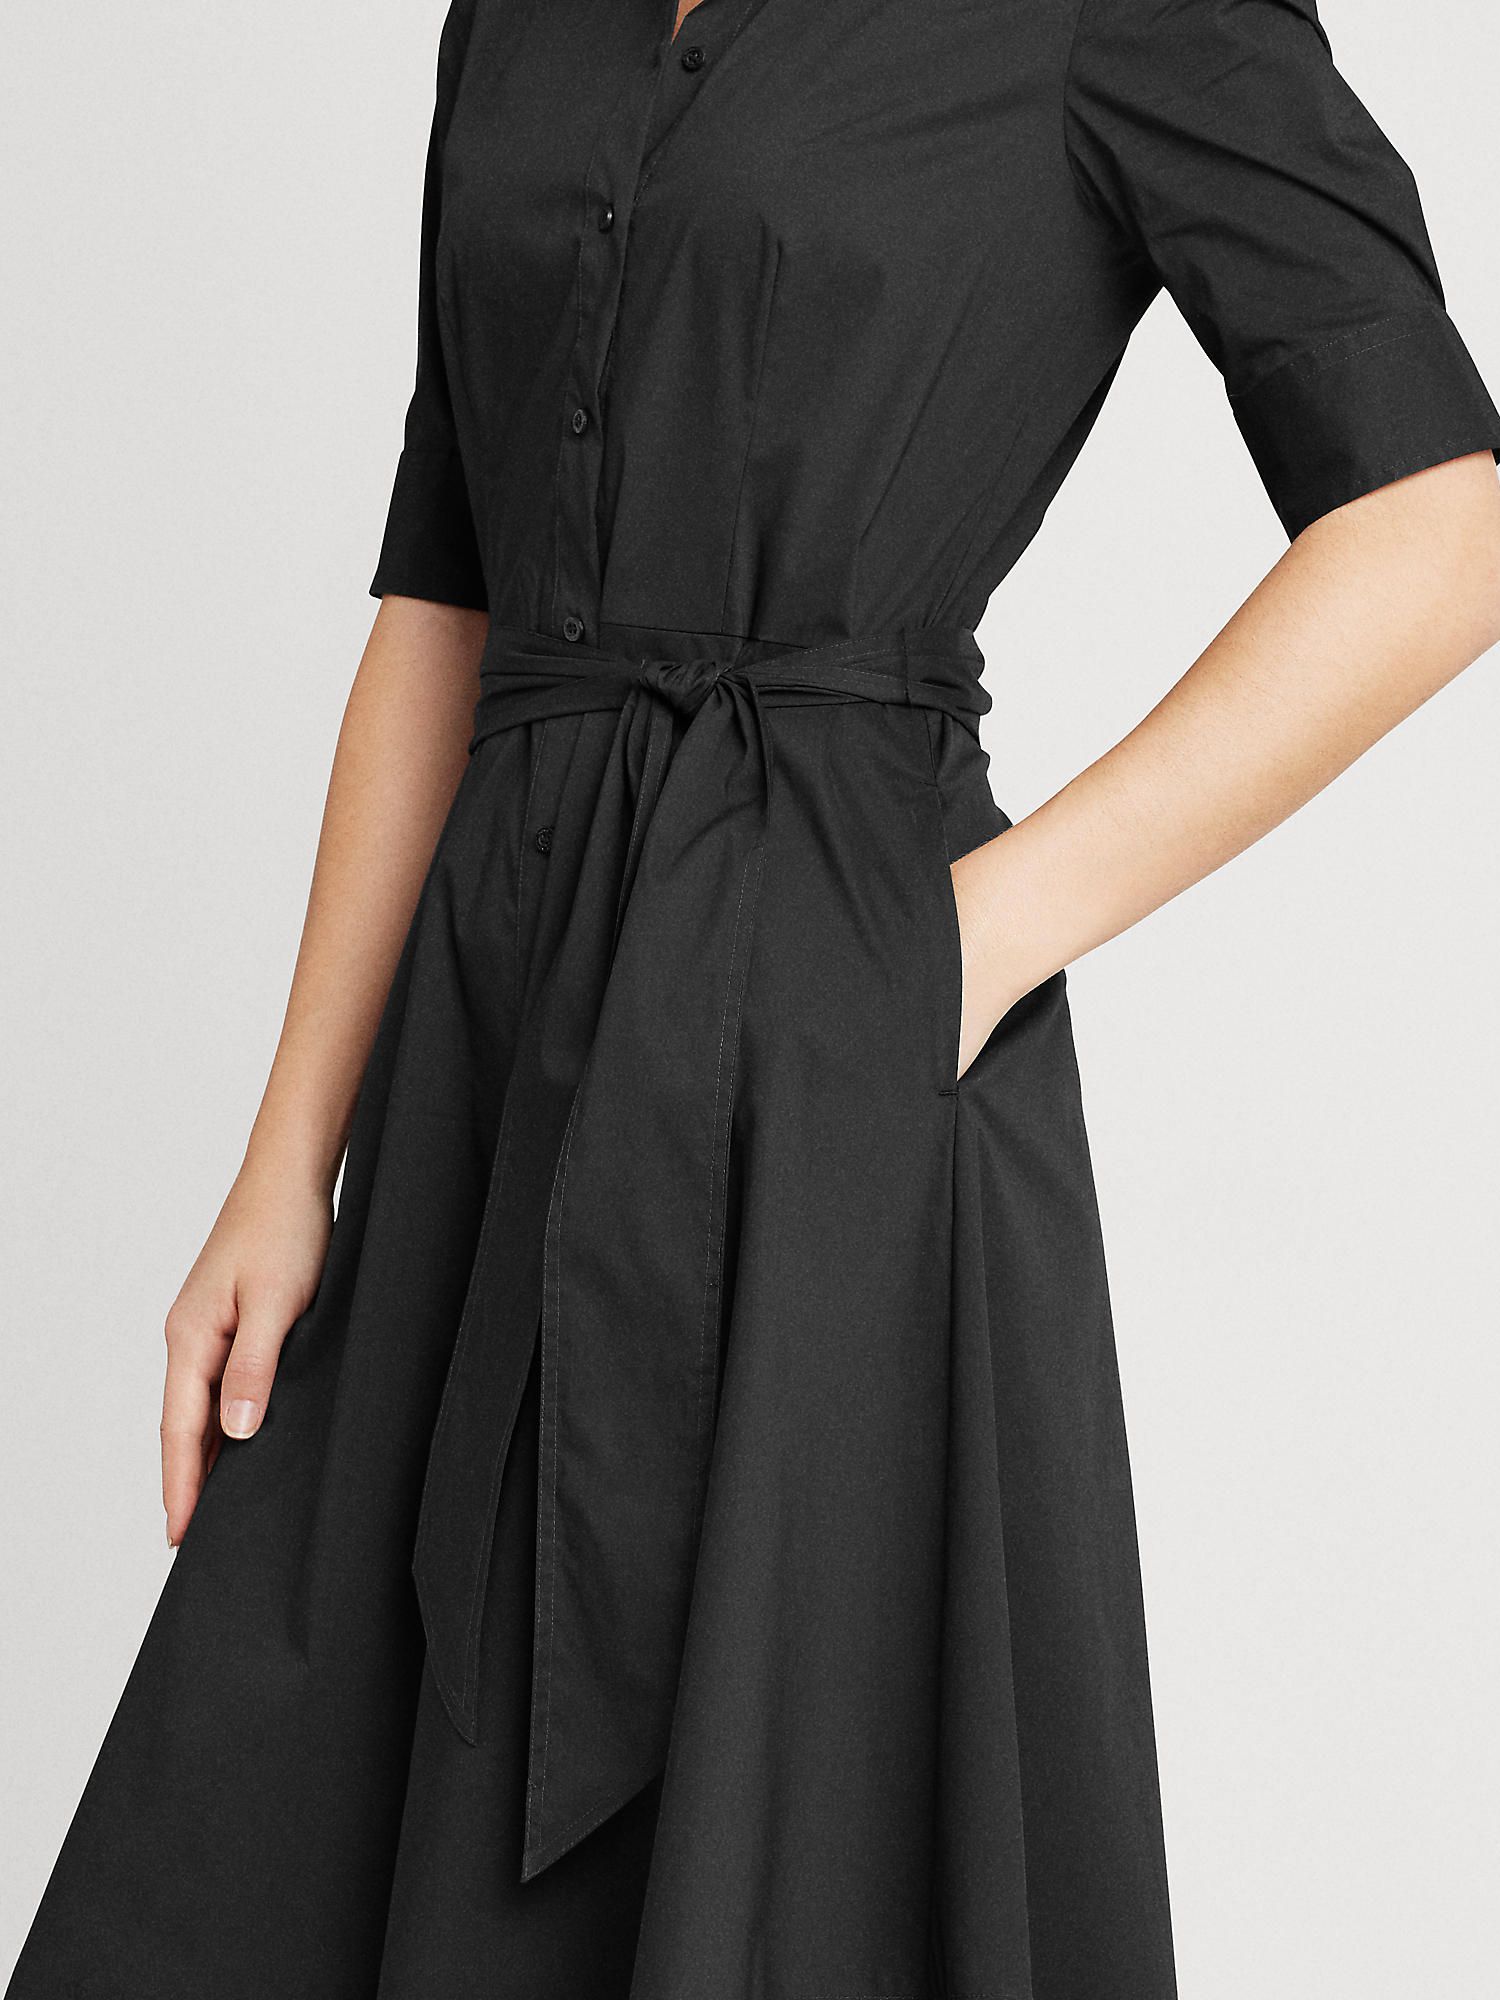 Lauren Ralph Lauren Finnbarr Short Sleeve Shirt Dress, Polo Black, 10